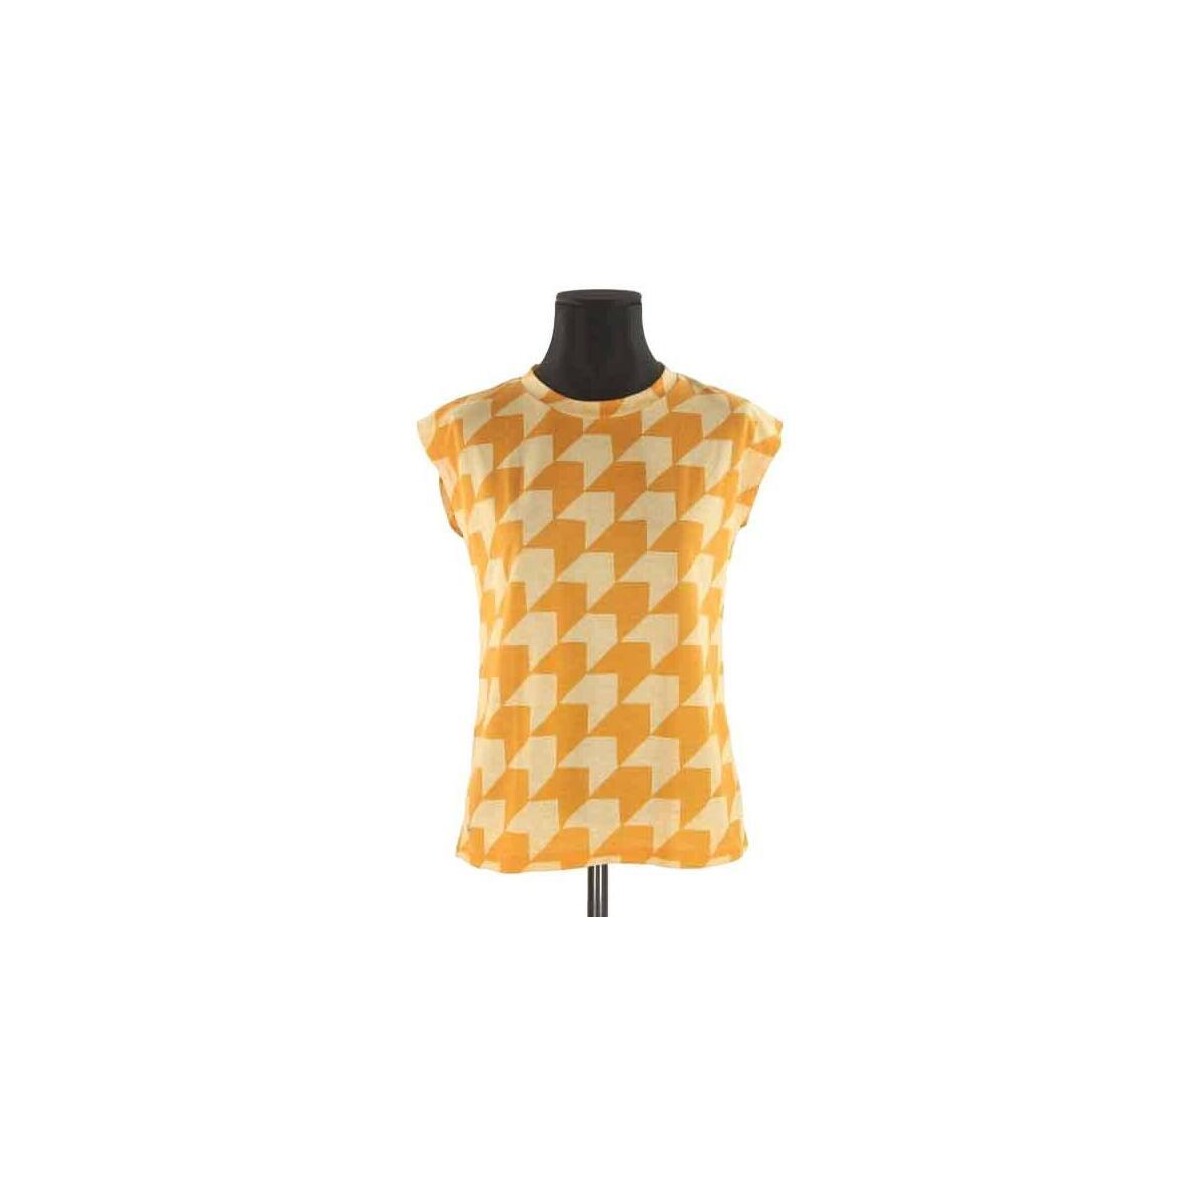 Vêtements Femme Débardeurs / T-shirts sans manche Lacoste T-shirt Orange